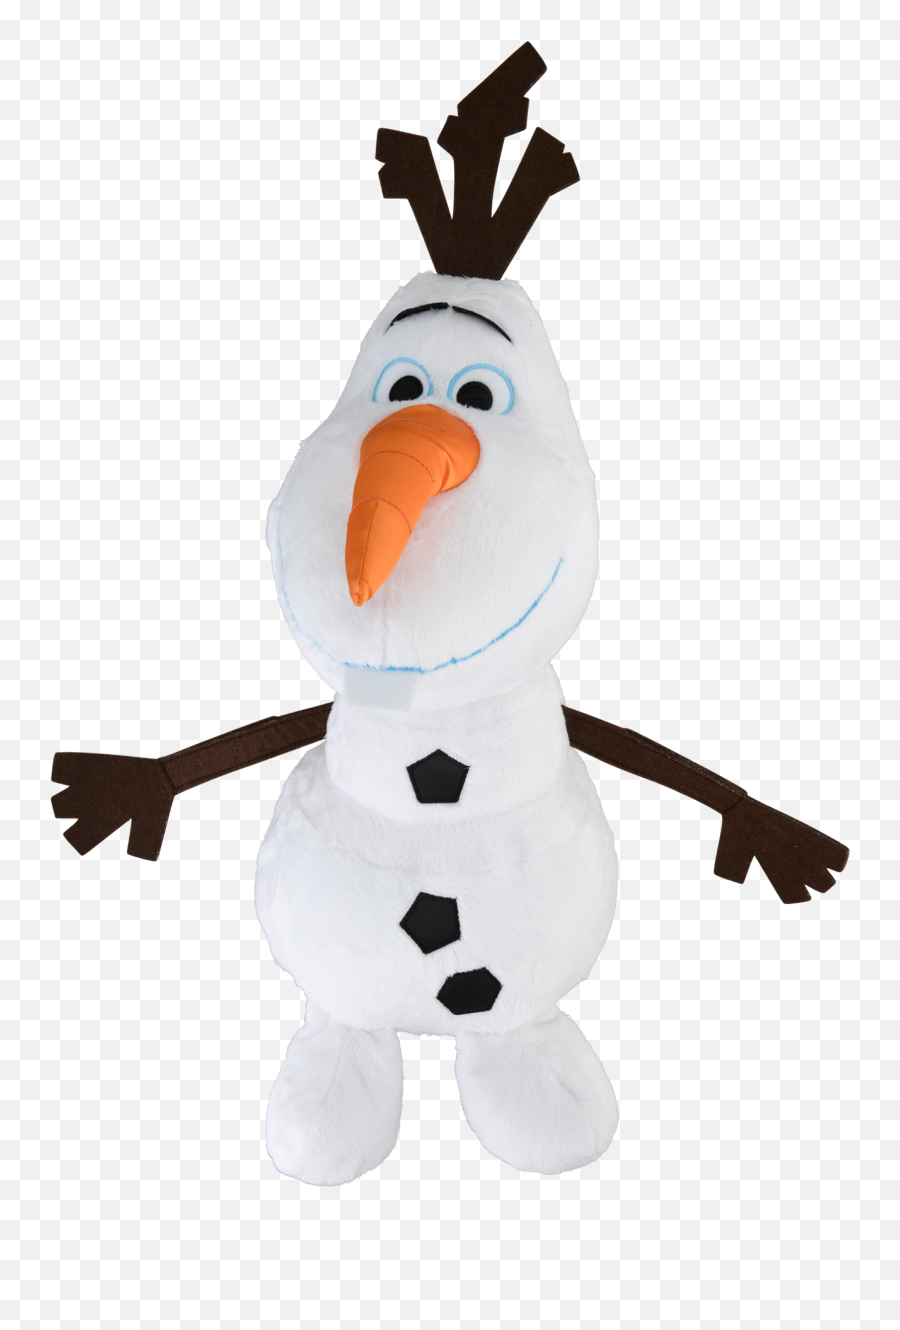 Download Hd Frozen Olaf 50 Cm Large Emoji,Olaf Png